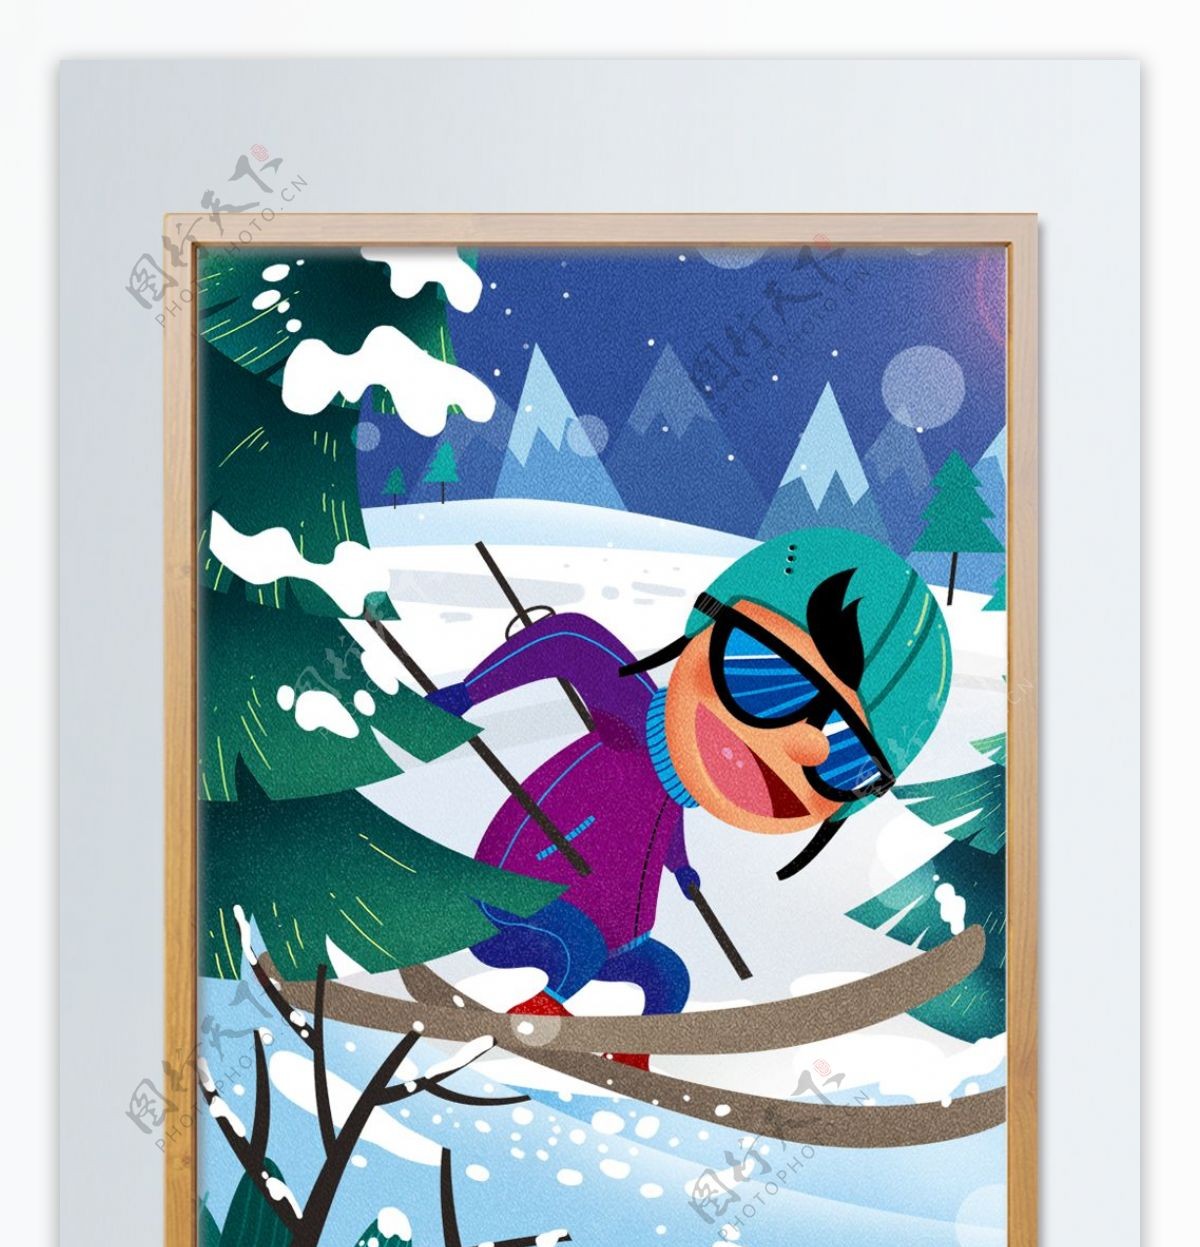 冬季滑雪场地欢乐滑行